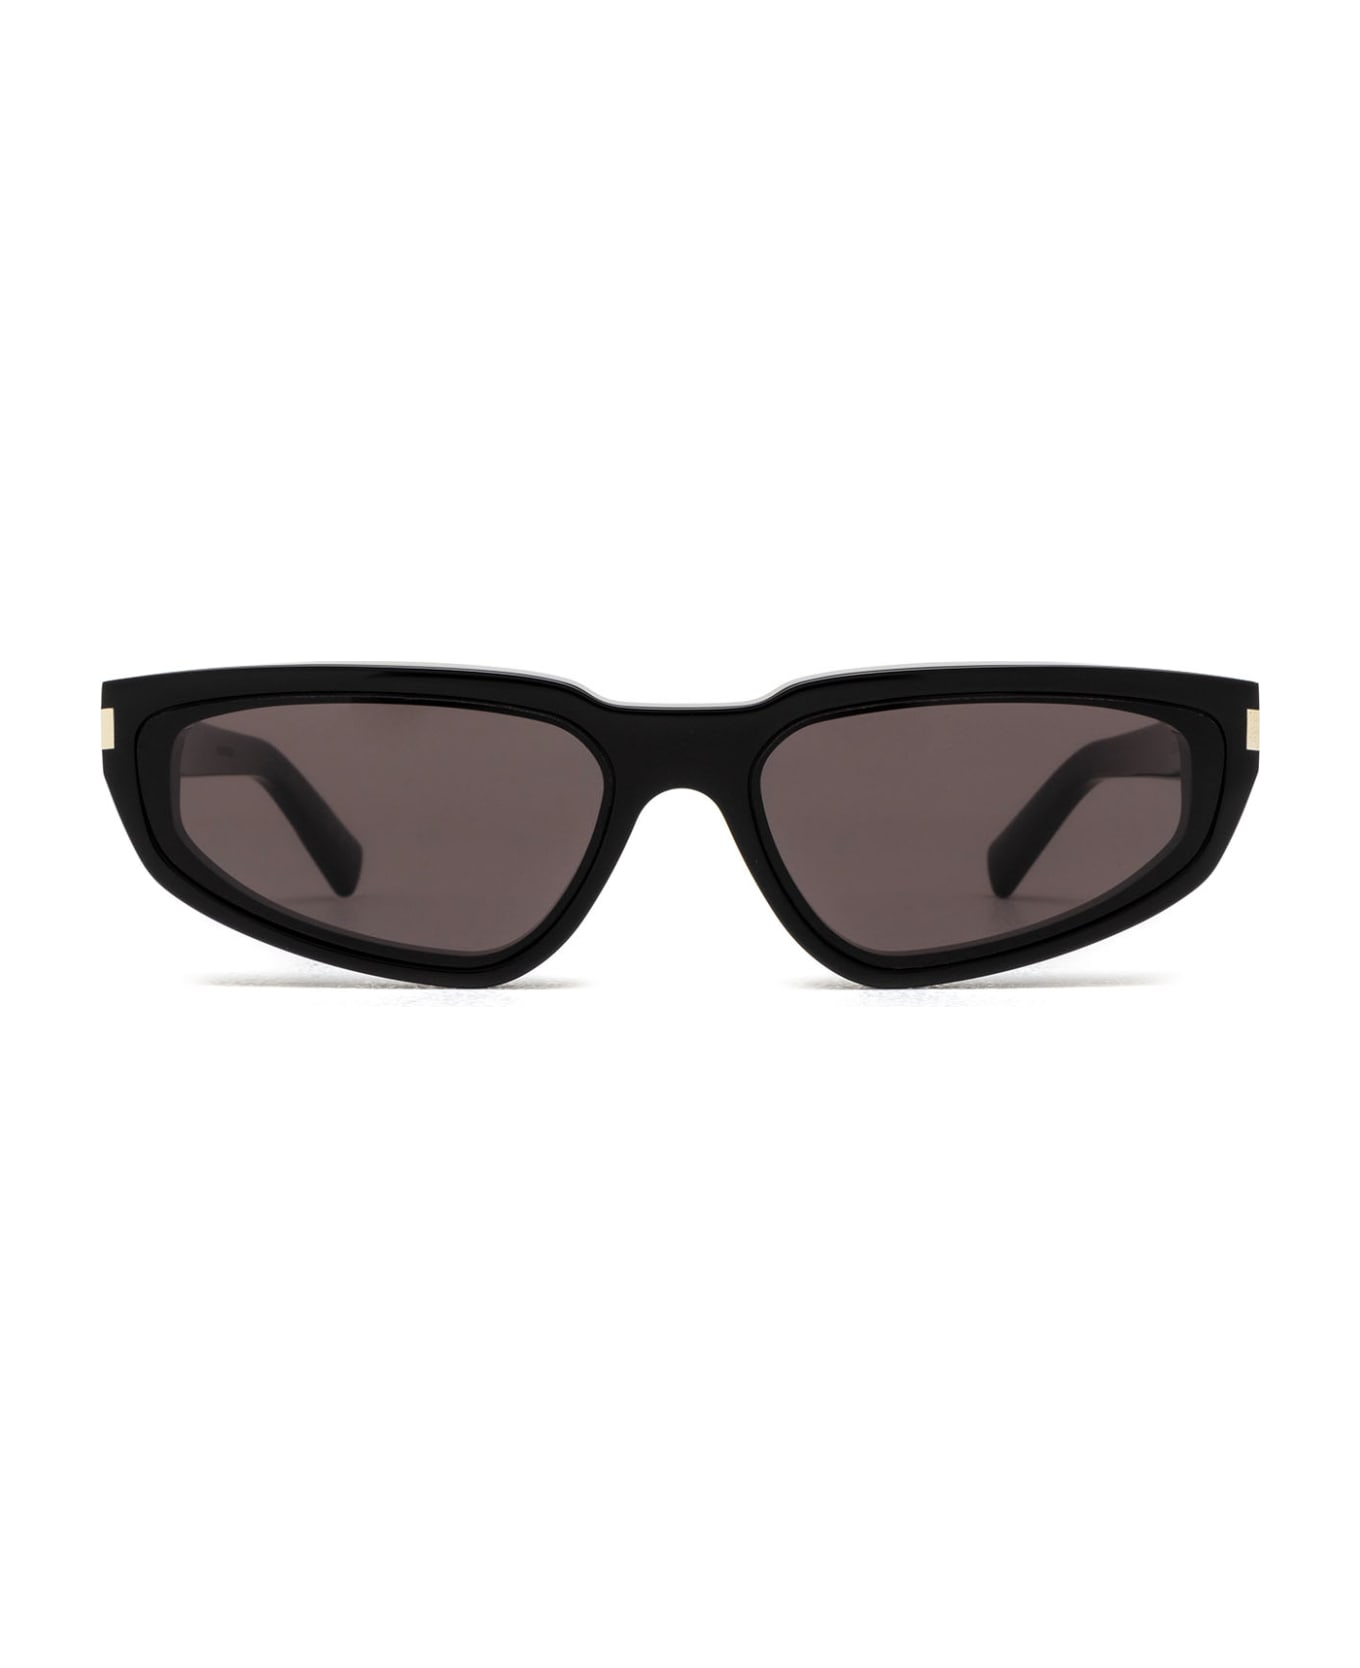 Saint Laurent Eyewear Sl 634 Black Sunglasses - Black